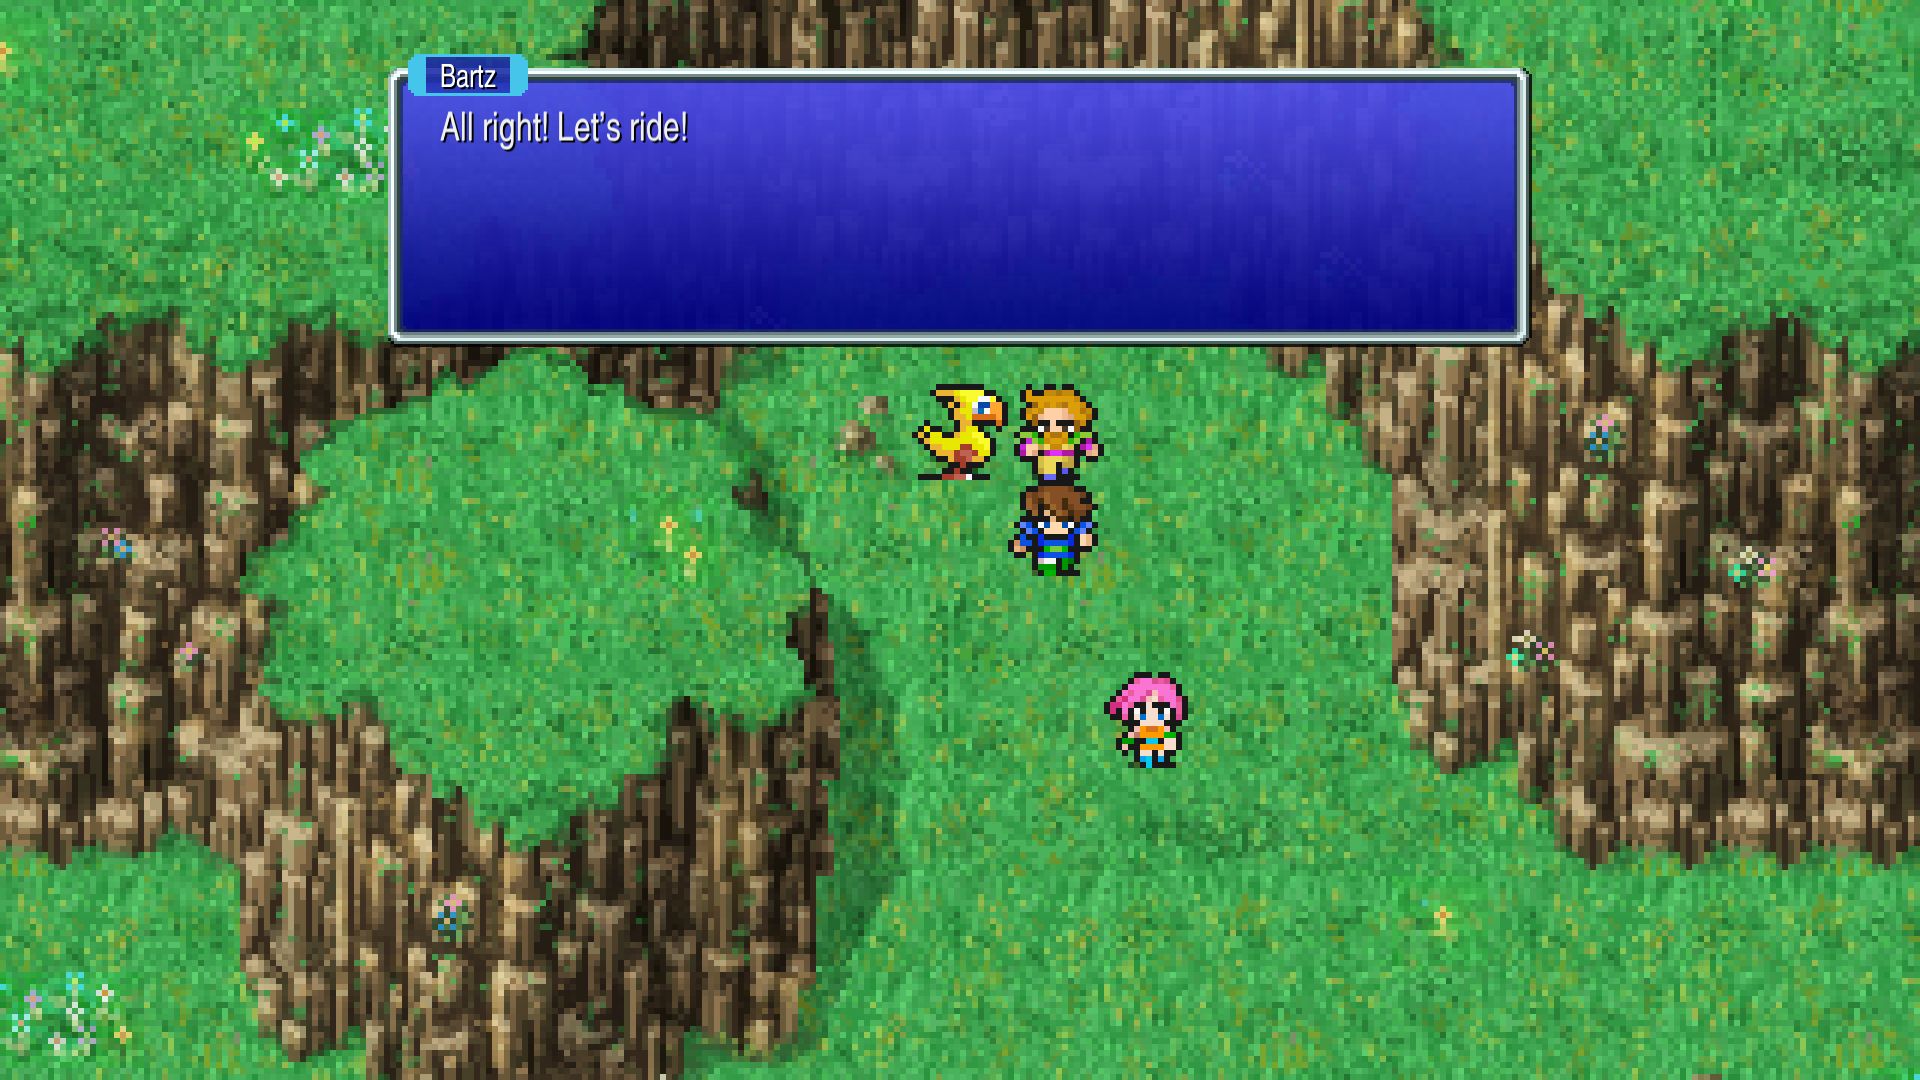 Zrzut ekranu rozgrywki pokazujący imprezę Final Fantasy v z Chocobo na mapie świata